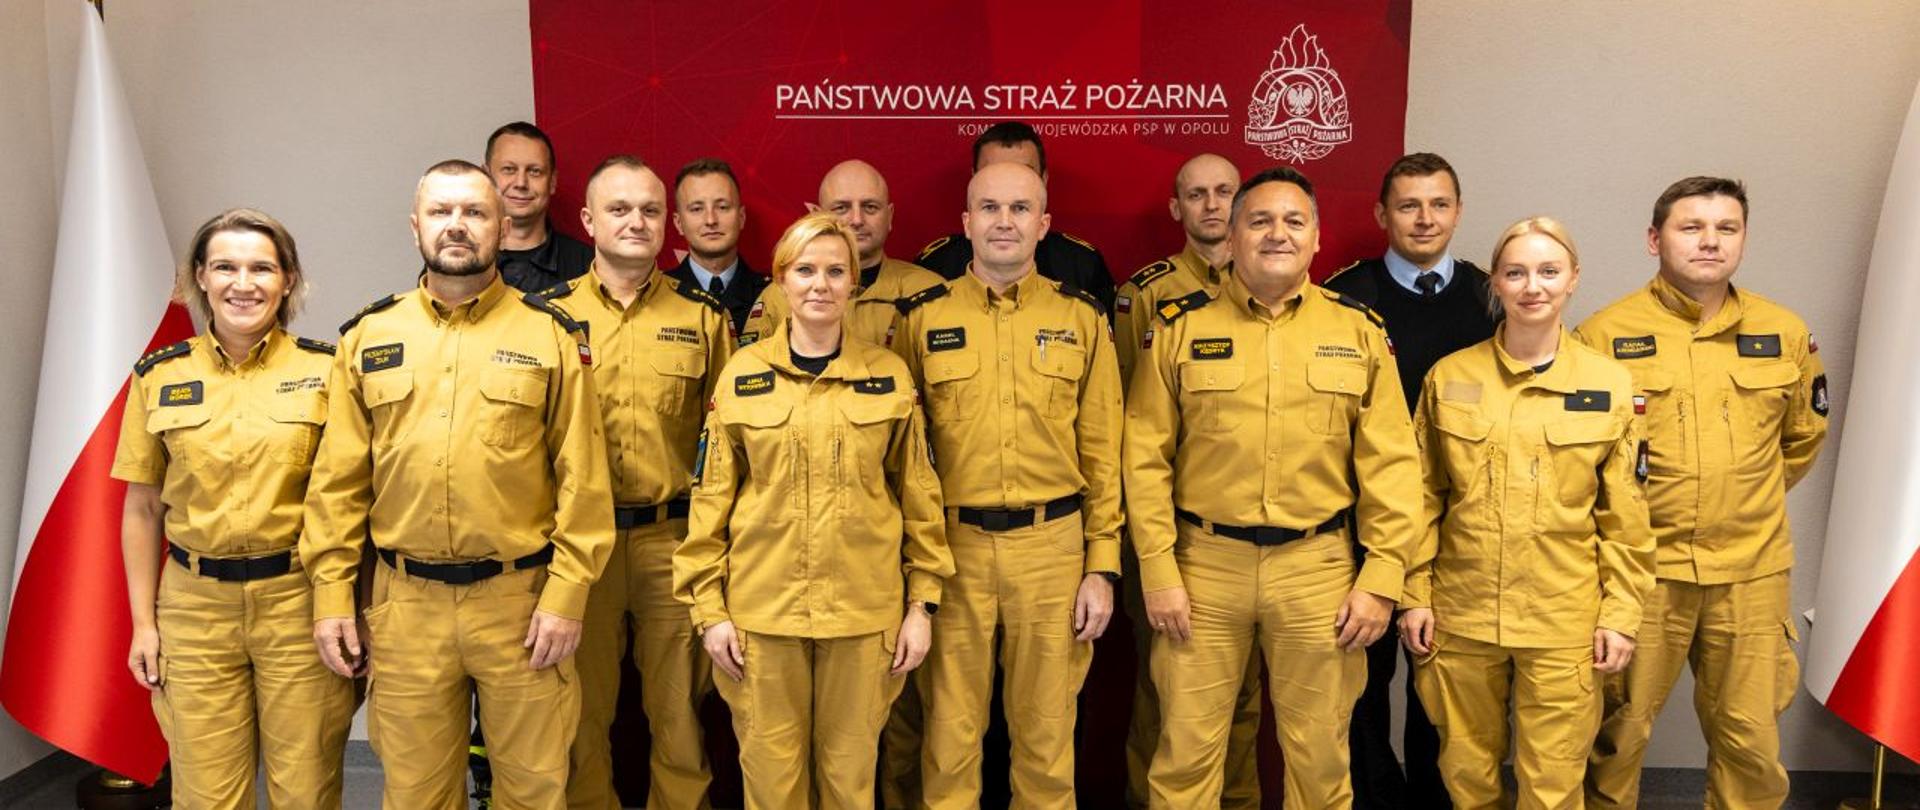 Wspólne zdjęcie członków komisji dyscyplinarnej z Opolskim Komendantem Wojewódzkim PSP. Strażacy w ubraniach służbowych stoją na tle banneru Państwowej Straży Pożarnej (koloru czerwonego) oraz dwóch Flag RP.